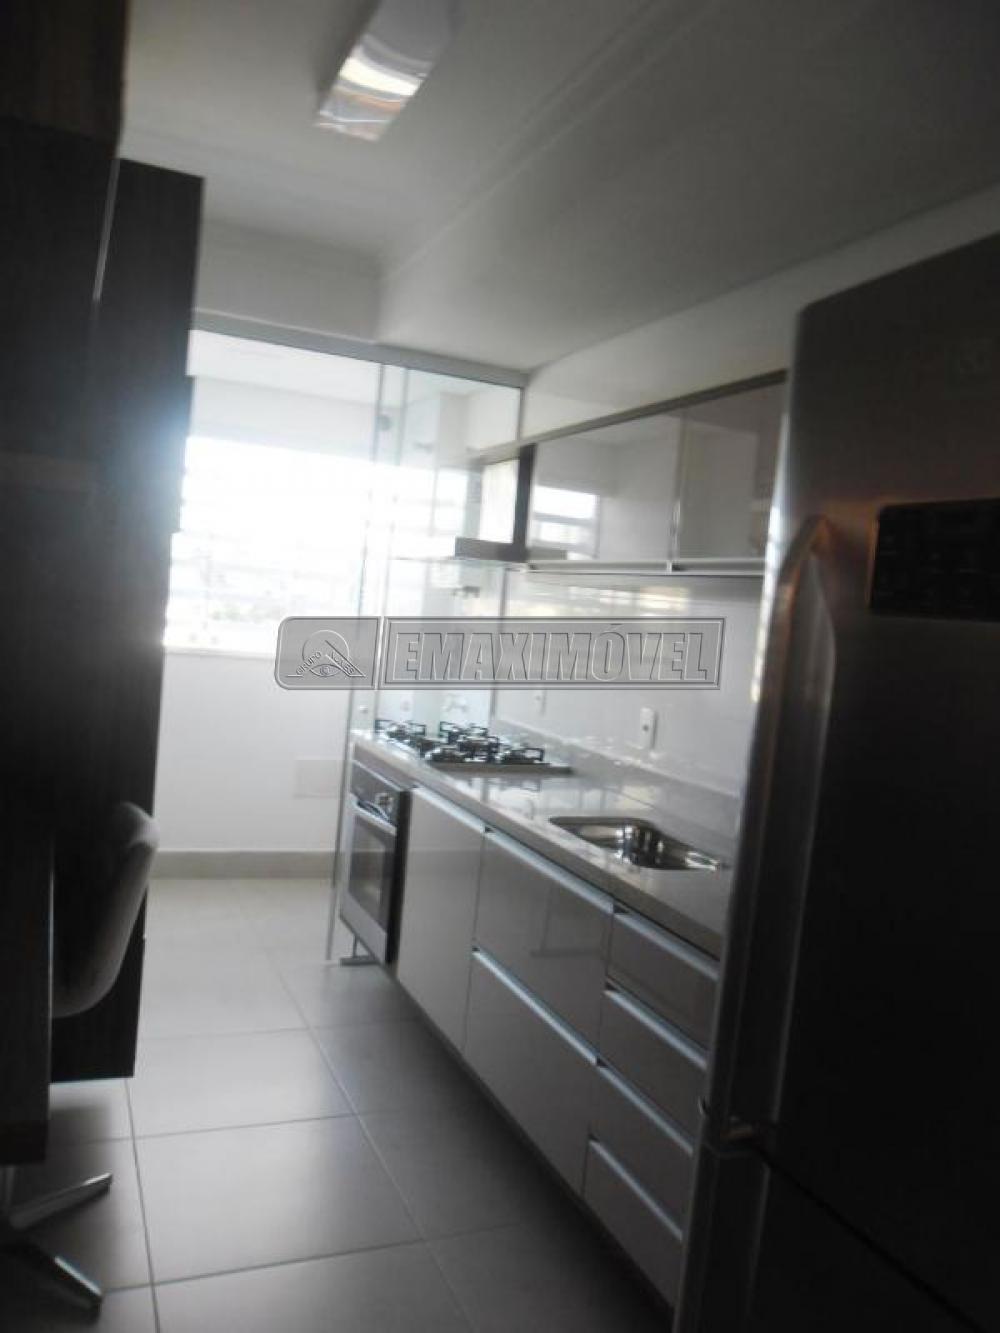 Comprar Apartamento / Padrão em Sorocaba R$ 550.000,00 - Foto 10